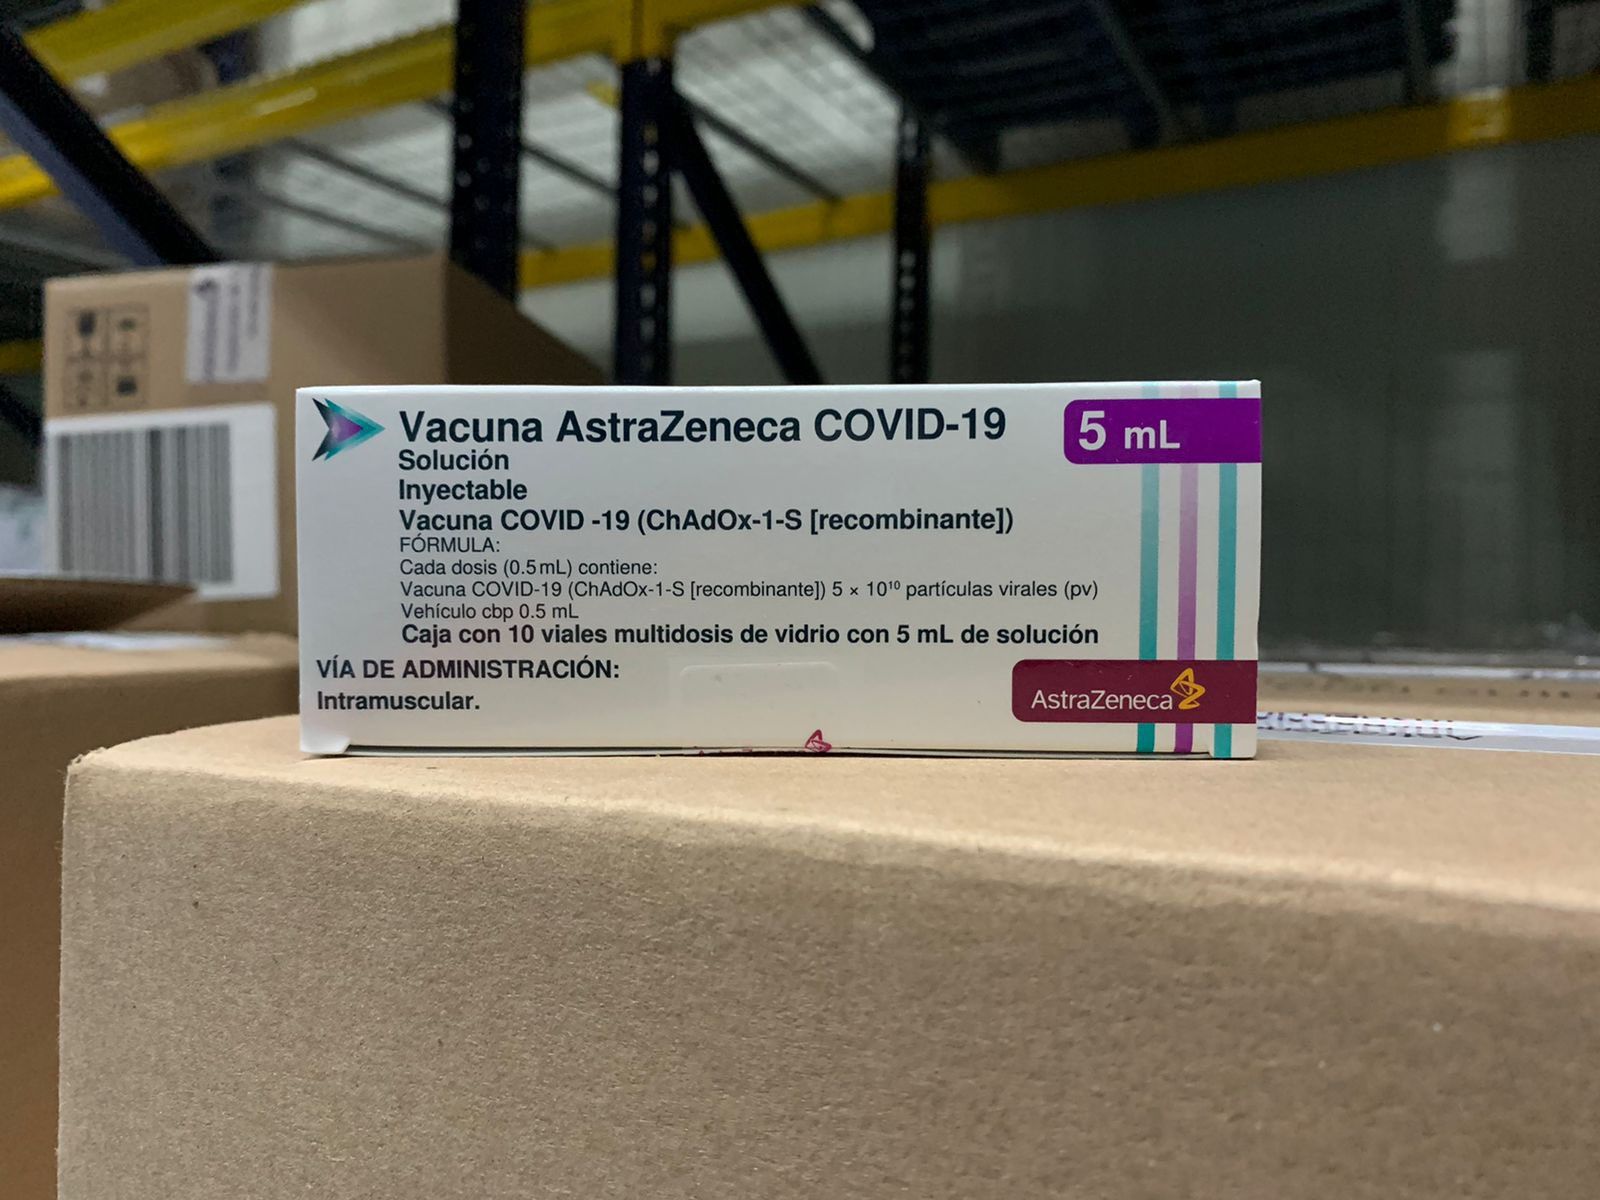 Nuevo lote de vacunas llegó a Colombia